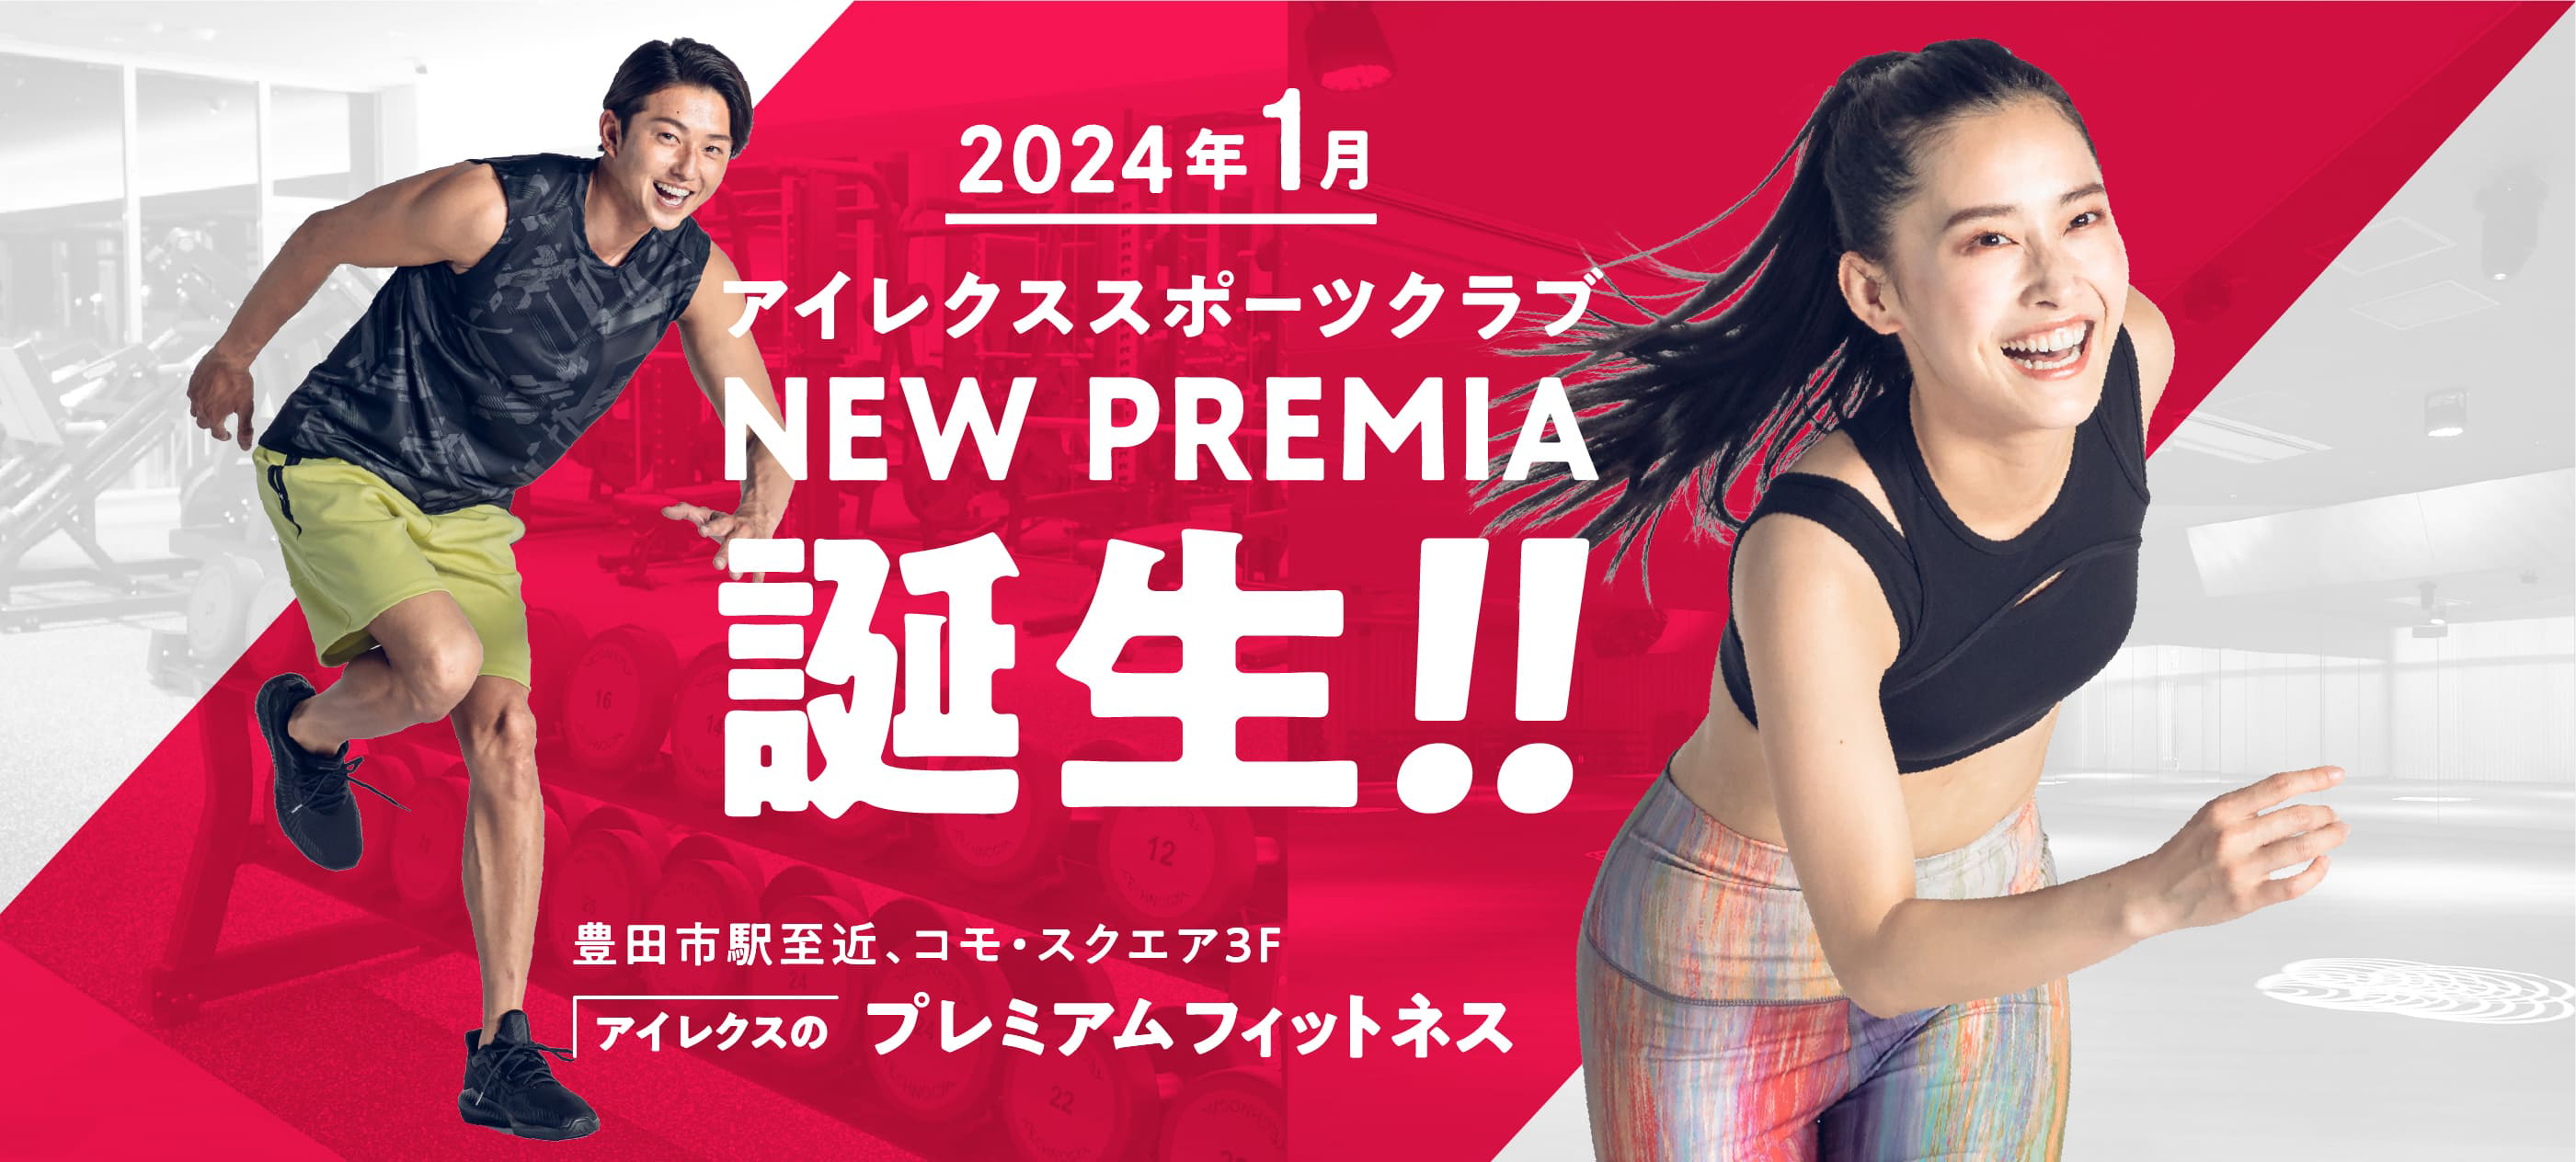 2024年1月 アイレクススポーツクラブ NEW PREMIA 誕生!! 豊田市駅至近、コモ・スクエア3F アイレクスのプレミアムフィットネス